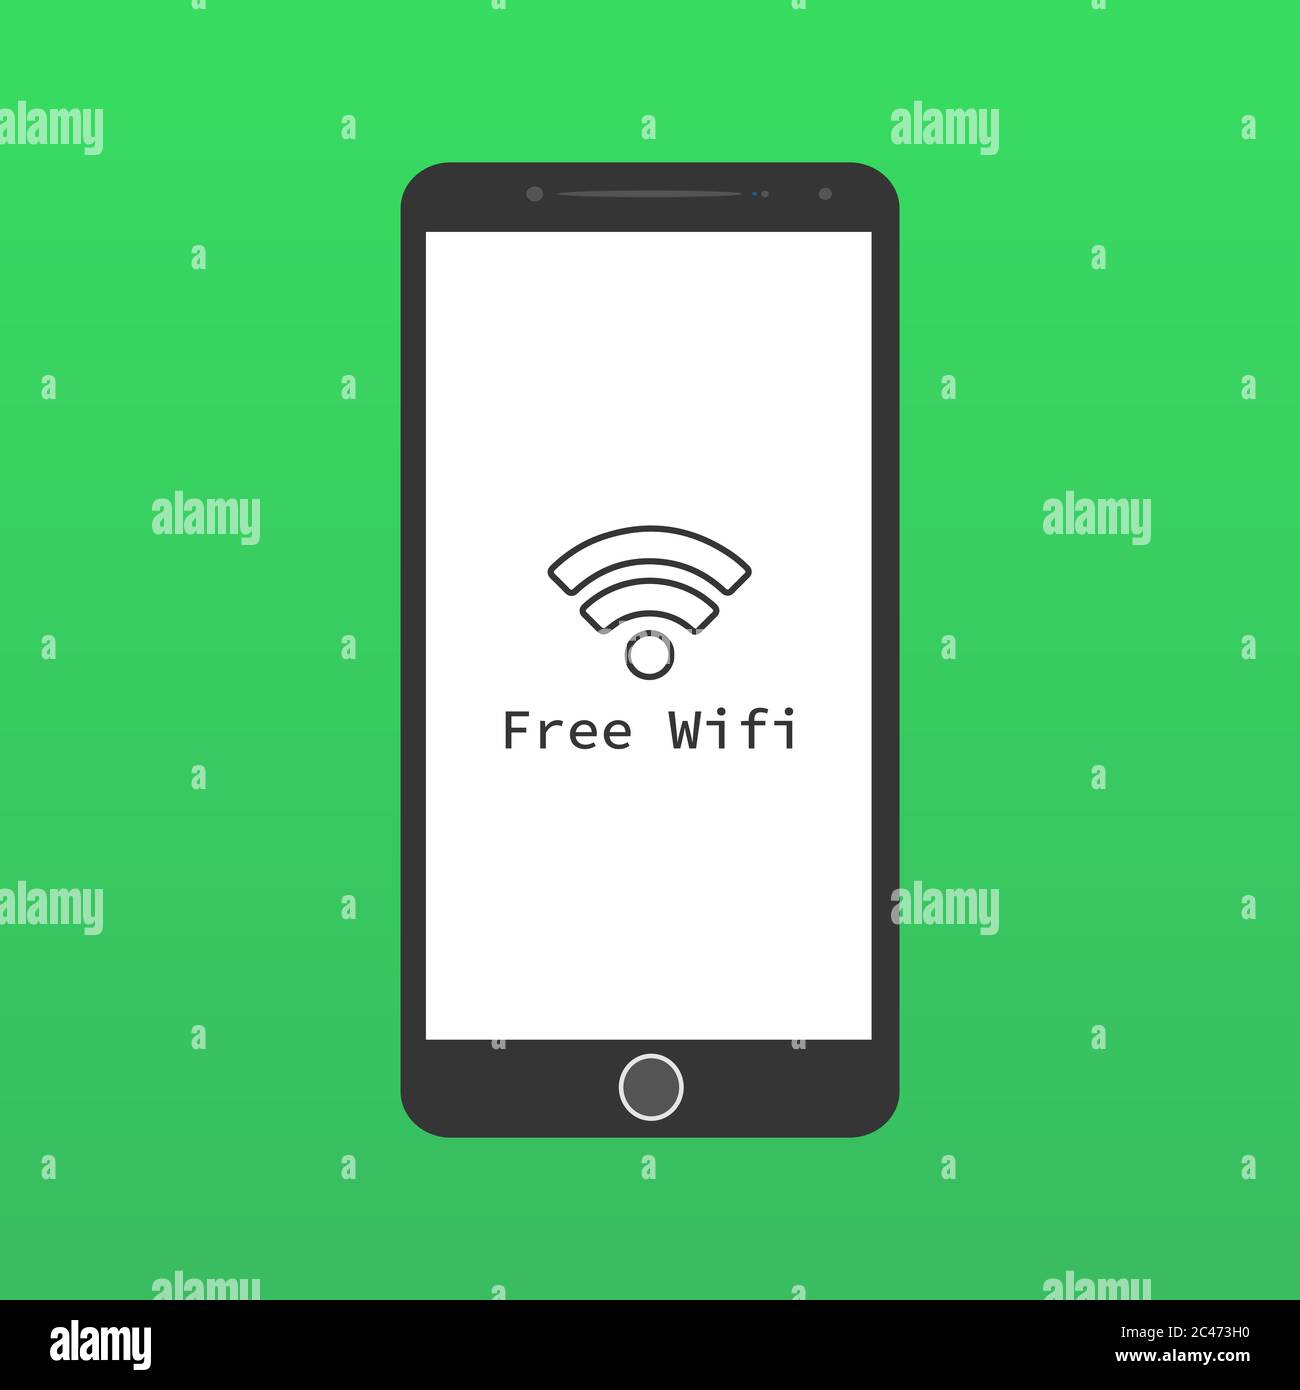 Chiếc smartphone với biểu tượng wifi miễn phí trên nền xanh chroma này sẽ khiến bạn cảm thấy thoải mái và đầy kết nối. Với sự phối hợp hoàn hảo giữa smartphone và wifi, bạn sẽ luôn có thể kết nối với thế giới mọi lúc mọi nơi.